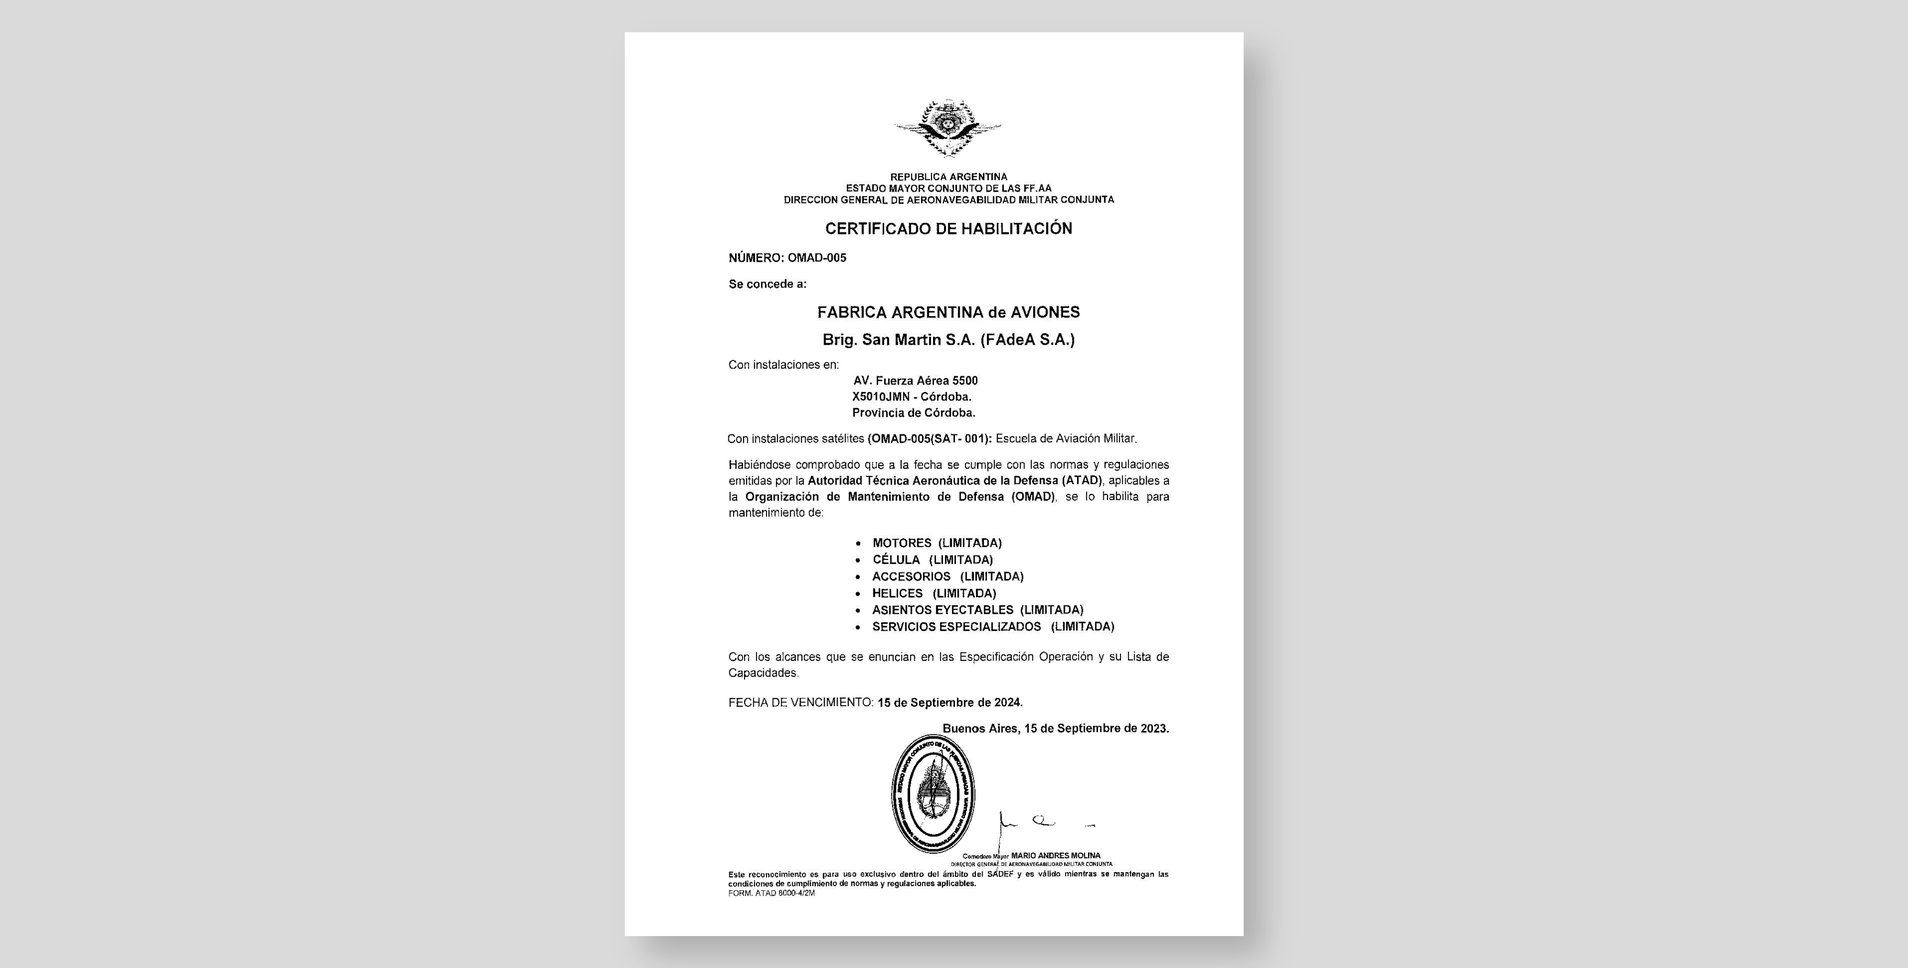 DIGAMC - Certificado de Habilitación OMAD 005